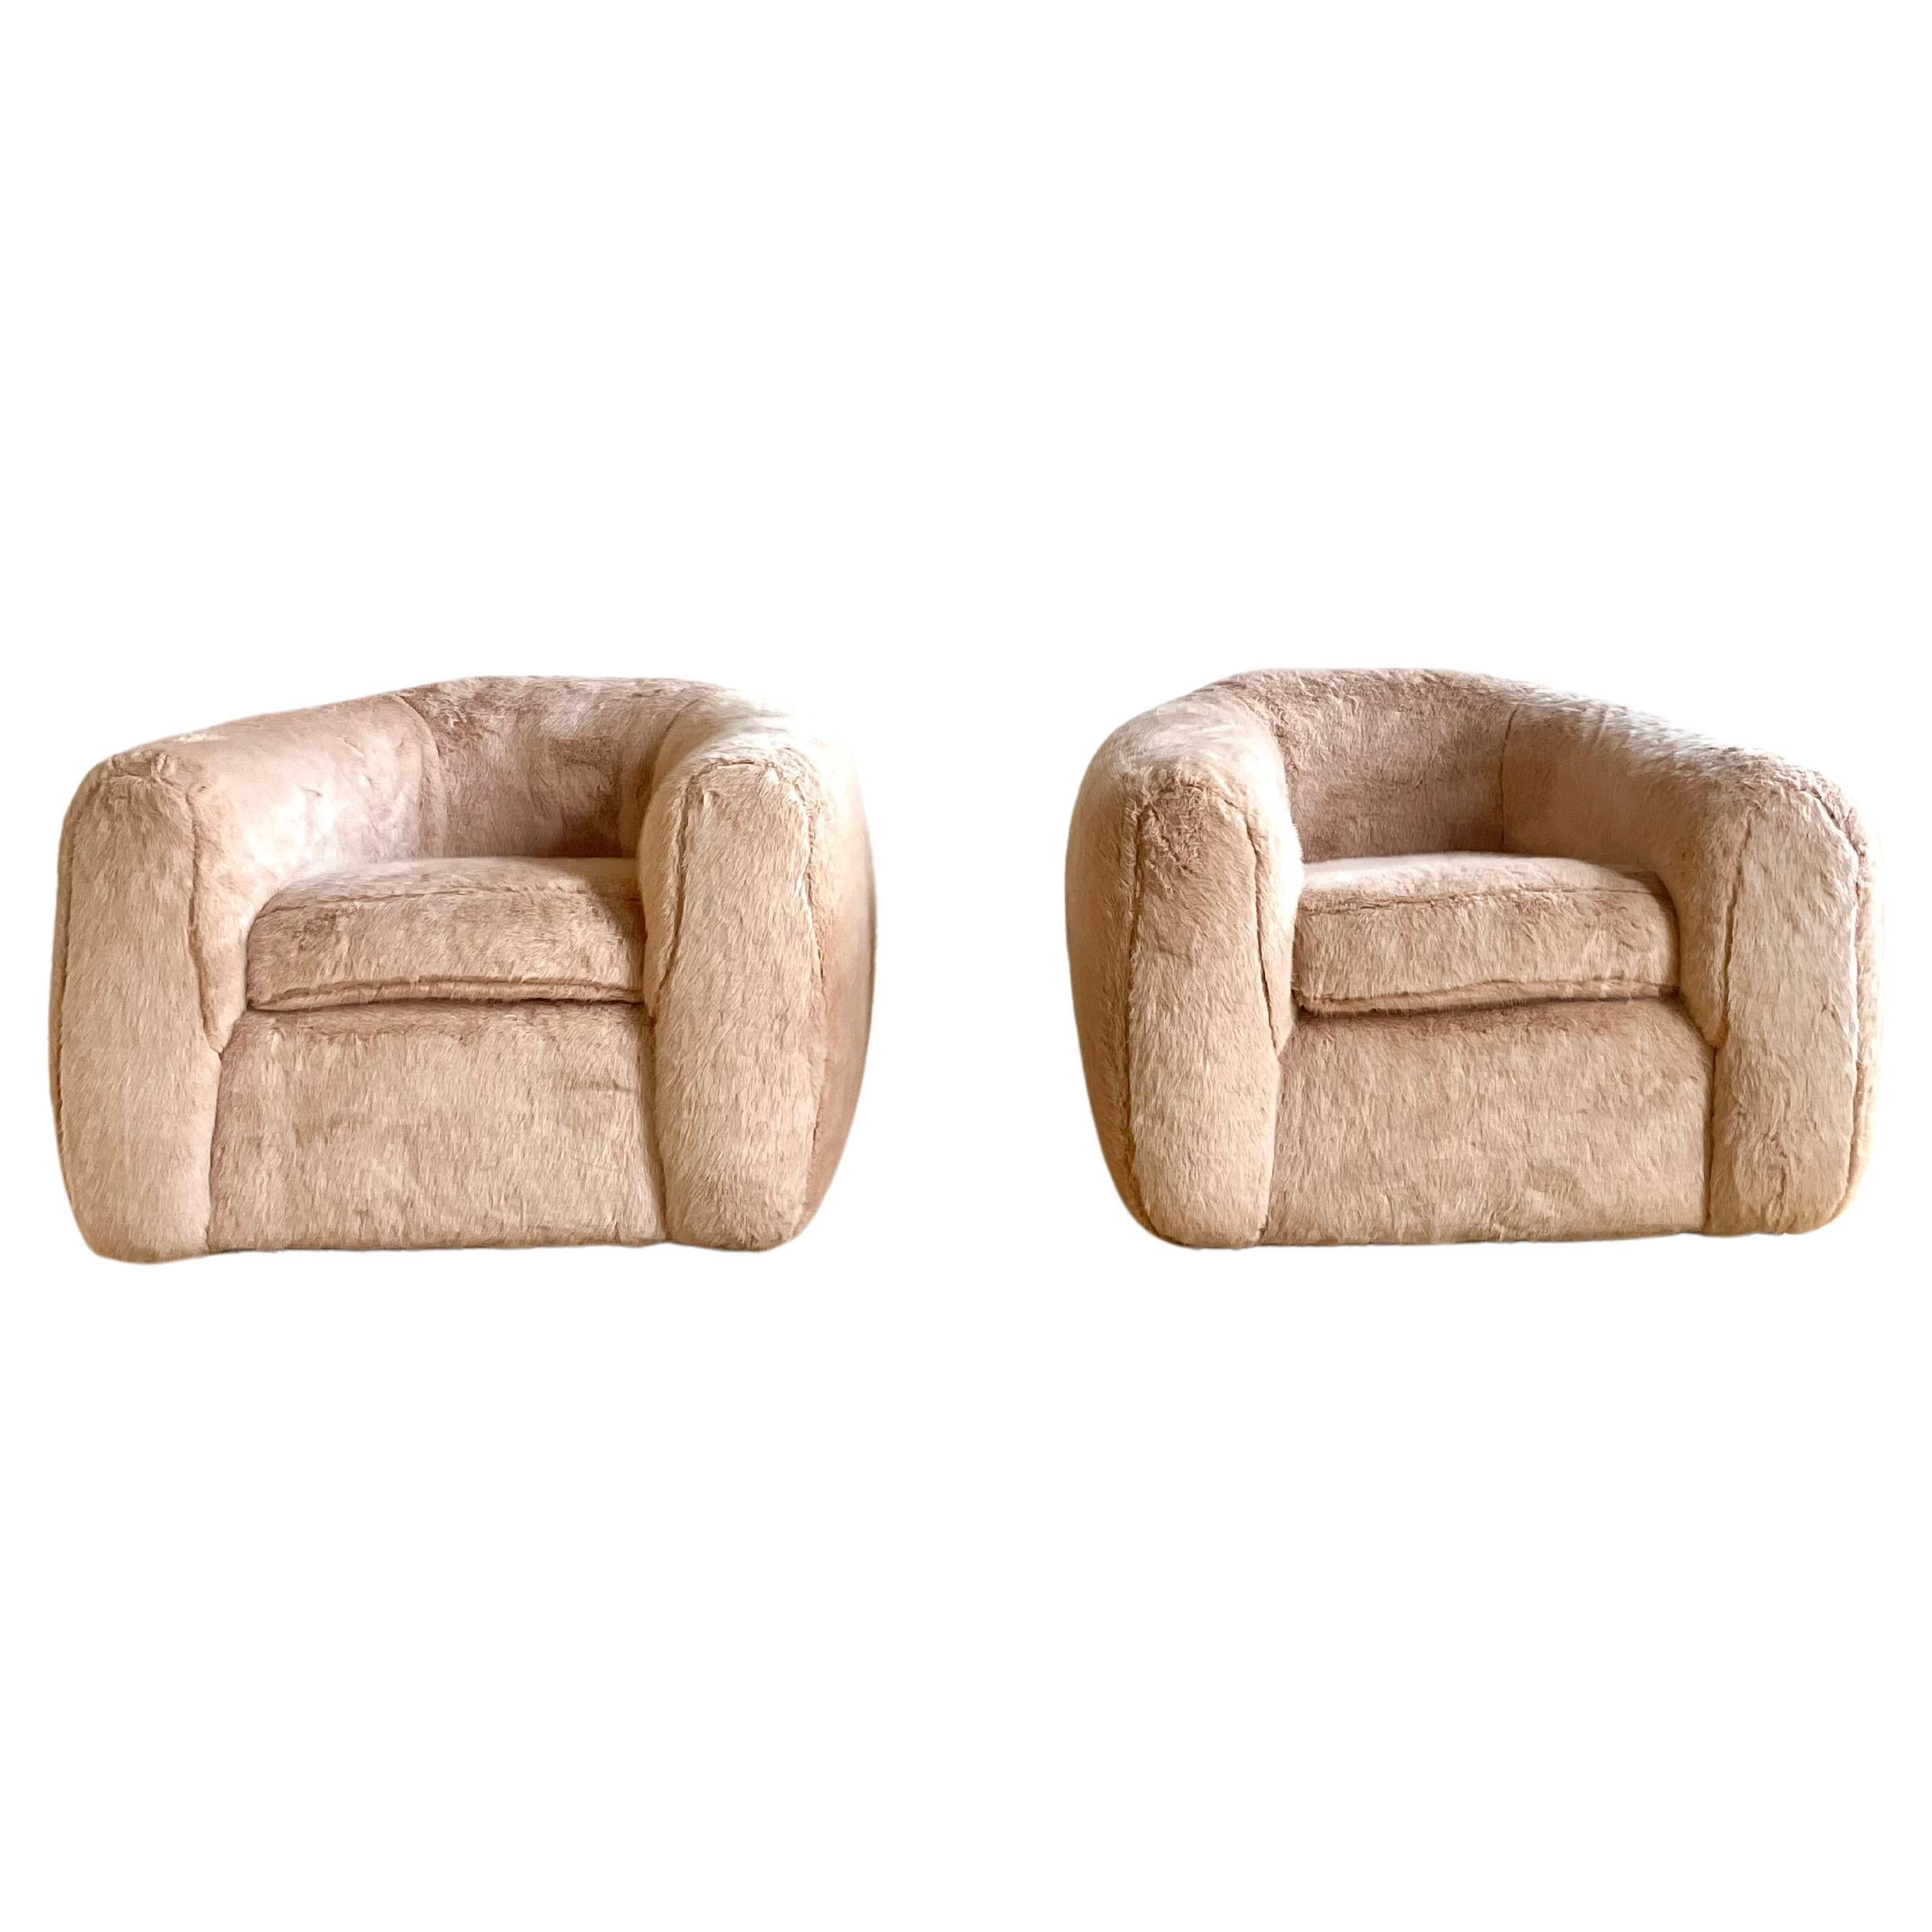 Absolut atemberaubend Paar Jean Royere Stil Stühle in hellrosa Kunstfell.

Die Stühle sind äußerst bequem und haben ein einzigartiges Profil, das 4 Holzbeine verbirgt. 

Diese Stühle wurden speziell für ein anspruchsvolles Penthouse in Manhattan